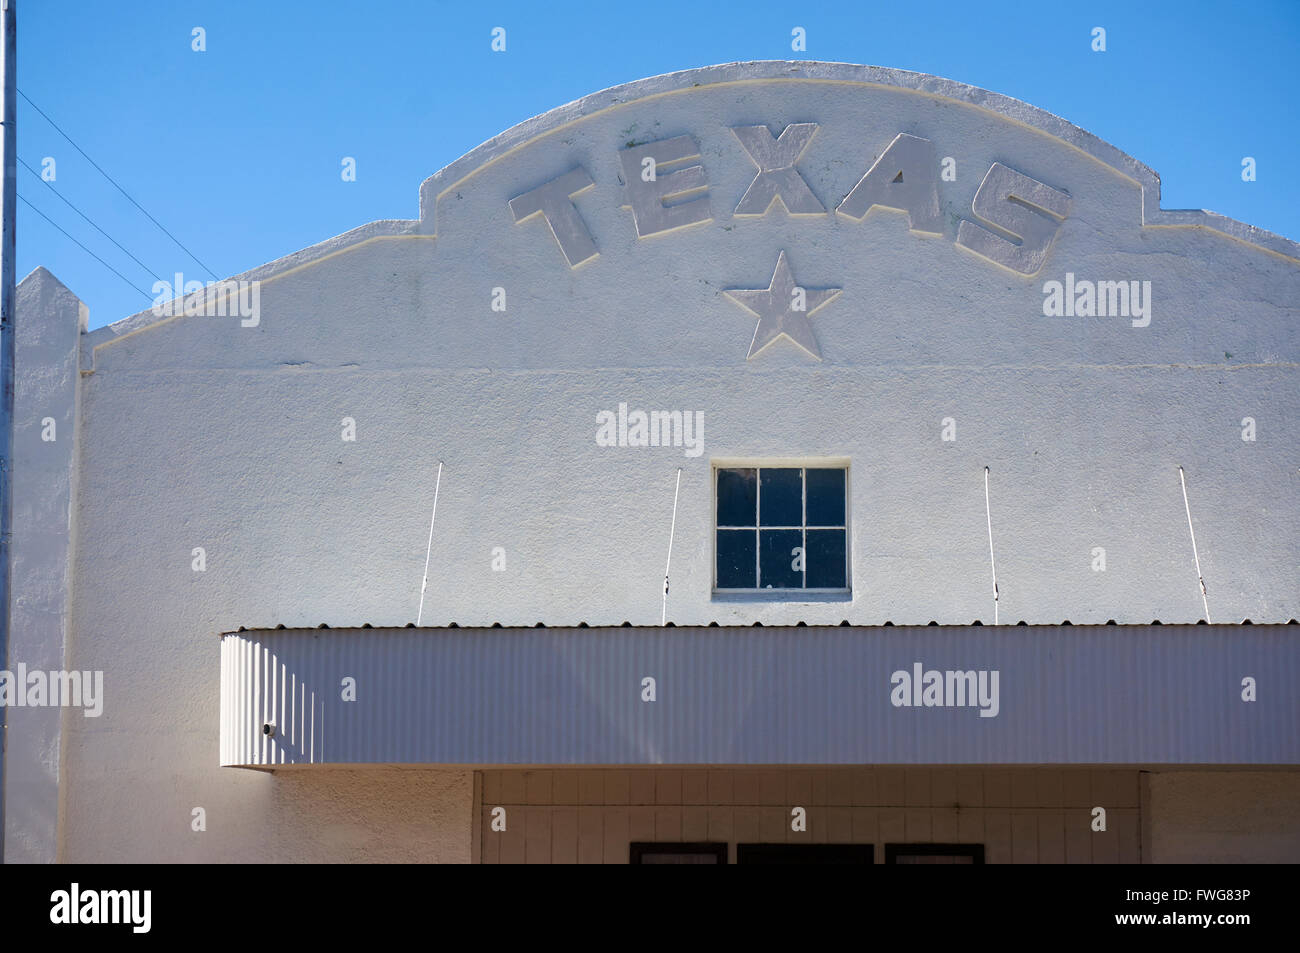 Devanture blanche avec Texas et Lone Star Marquee, Marfa, Texas, États-Unis Banque D'Images